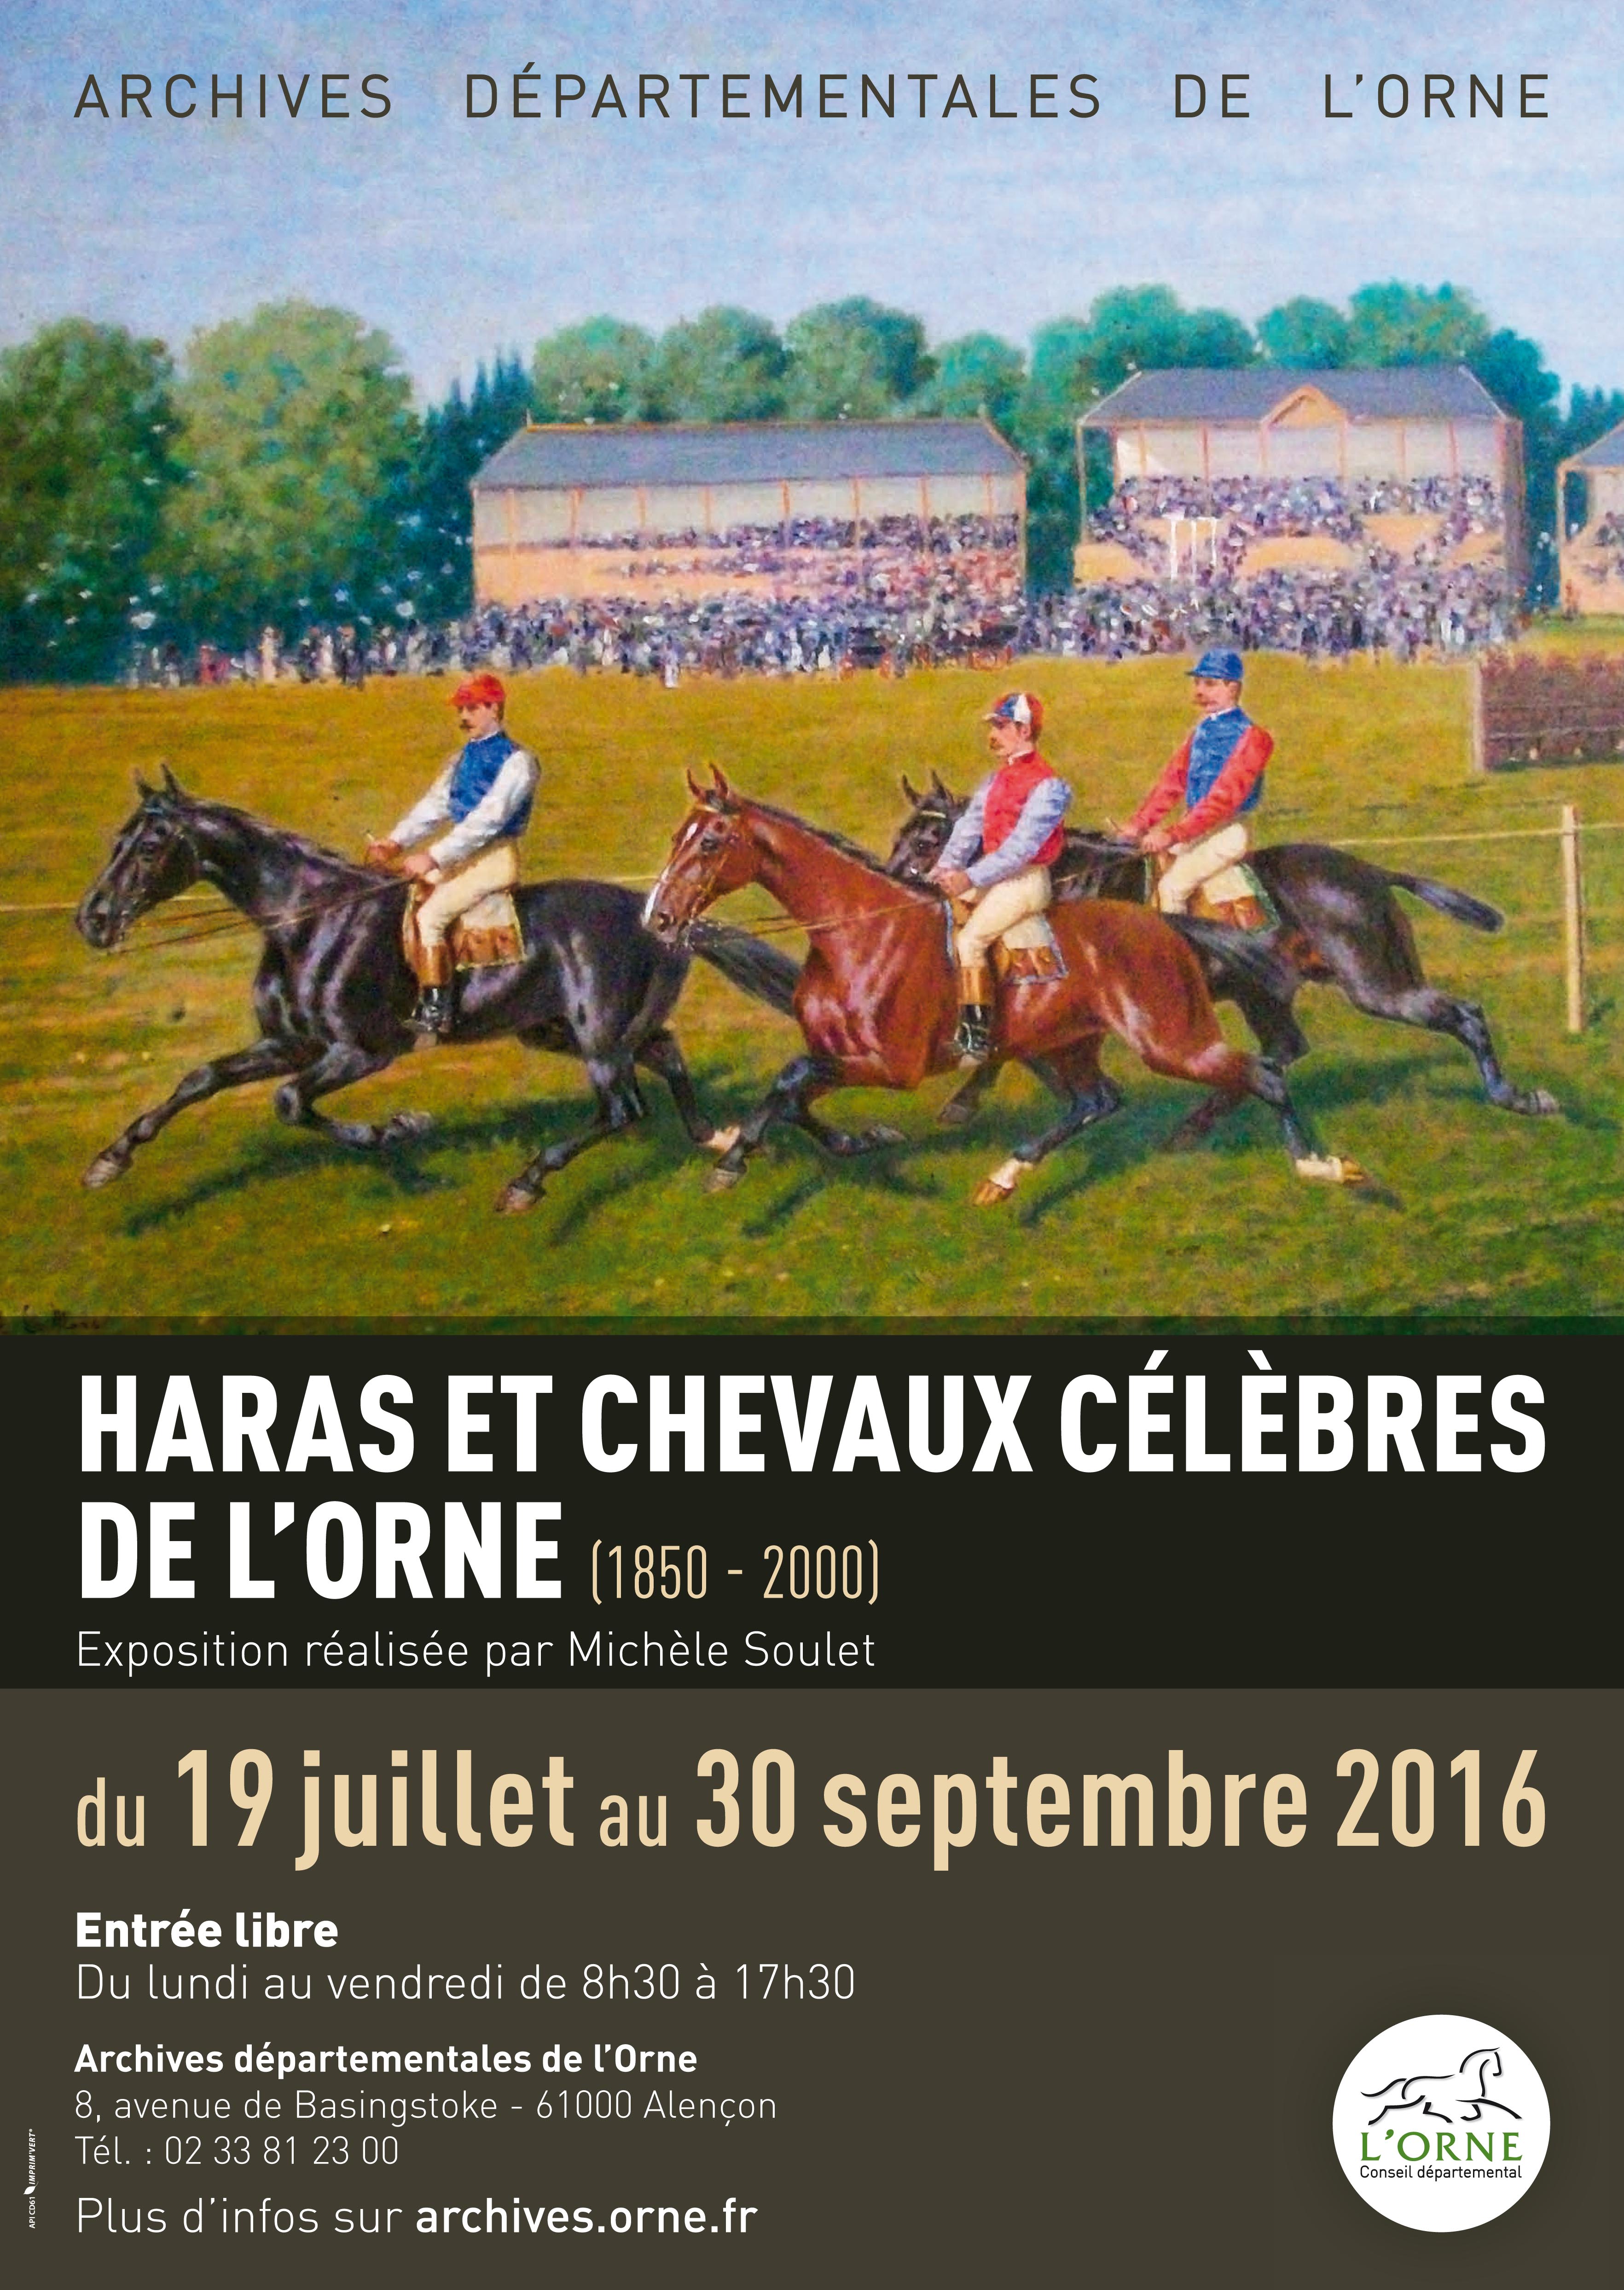 Haras et chevaux célèbres de l'Orne (1850-2000)